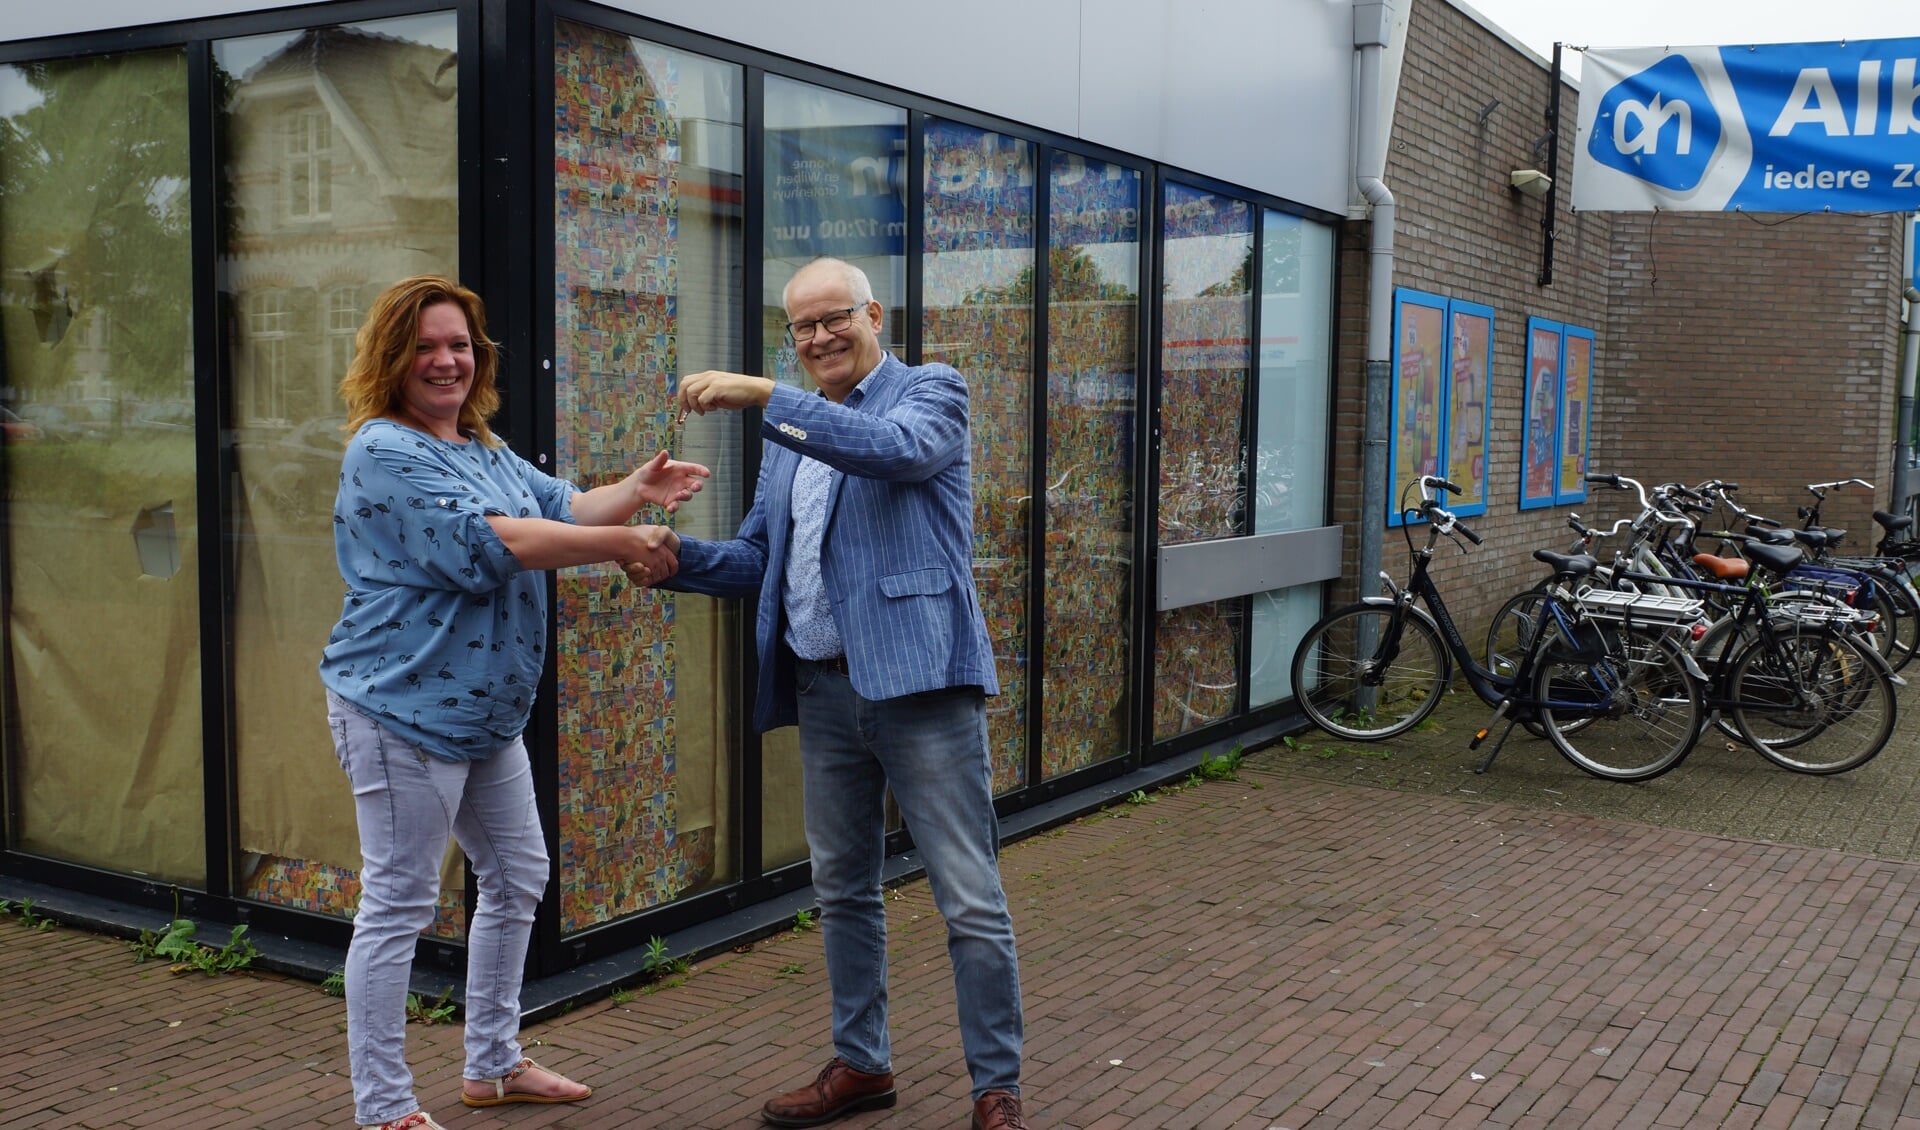 Wilbert Grotenhuys overhandigt de sleutel aan Wendy Emsbroek. Foto: Bas Bloem